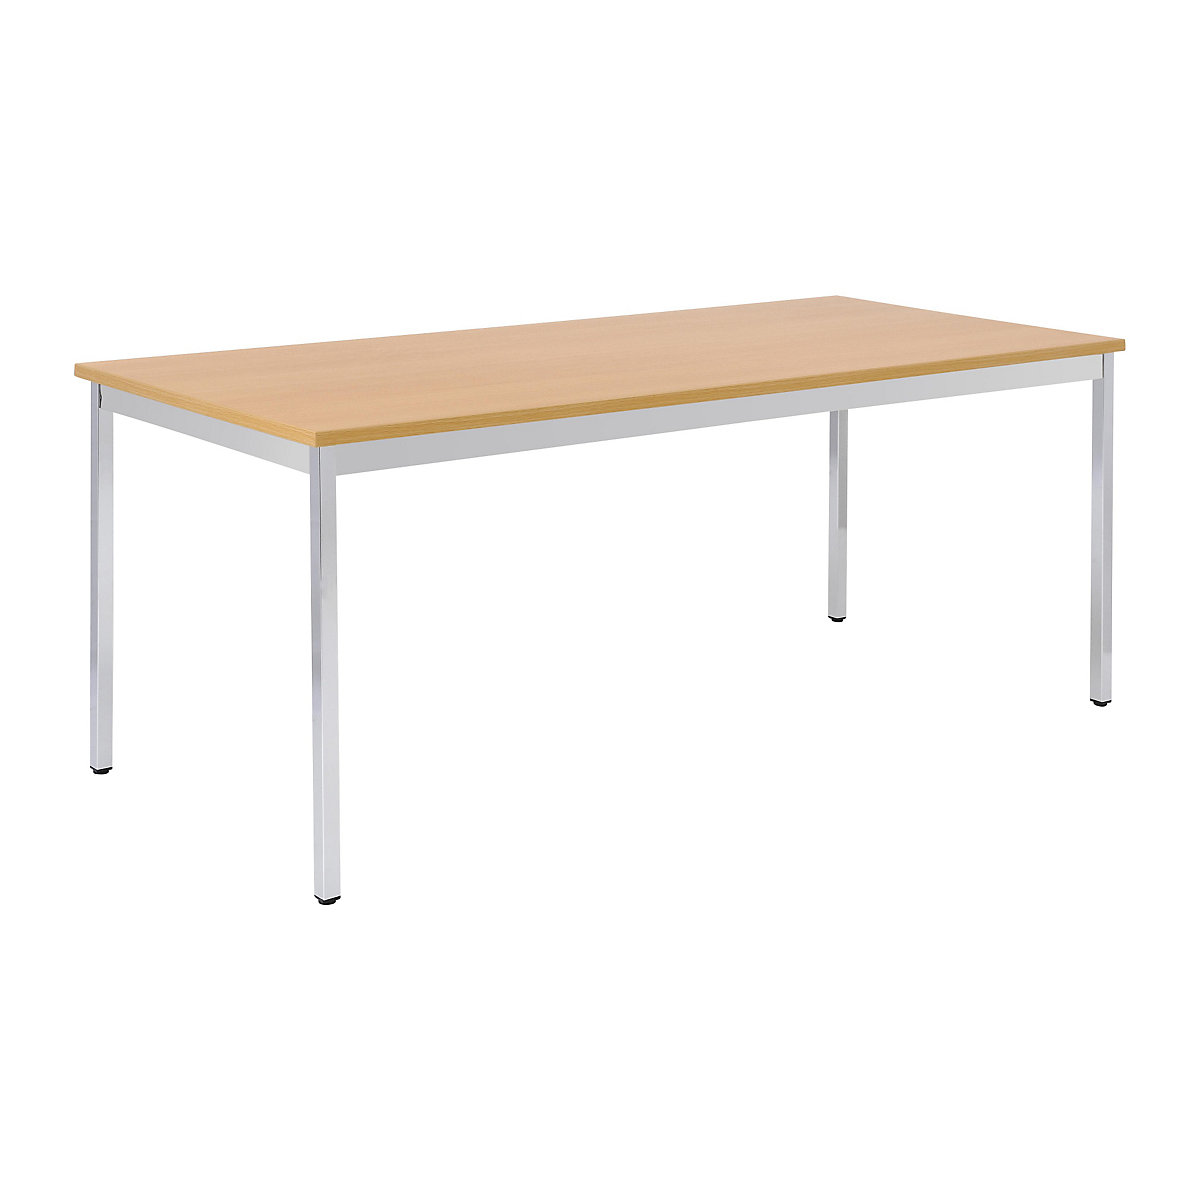 Table polyvalente – eurokraft basic, rectangulaire, l x h 1400 x 740 mm, profondeur 700 mm, plateau façon hêtre, piétement chromé-13